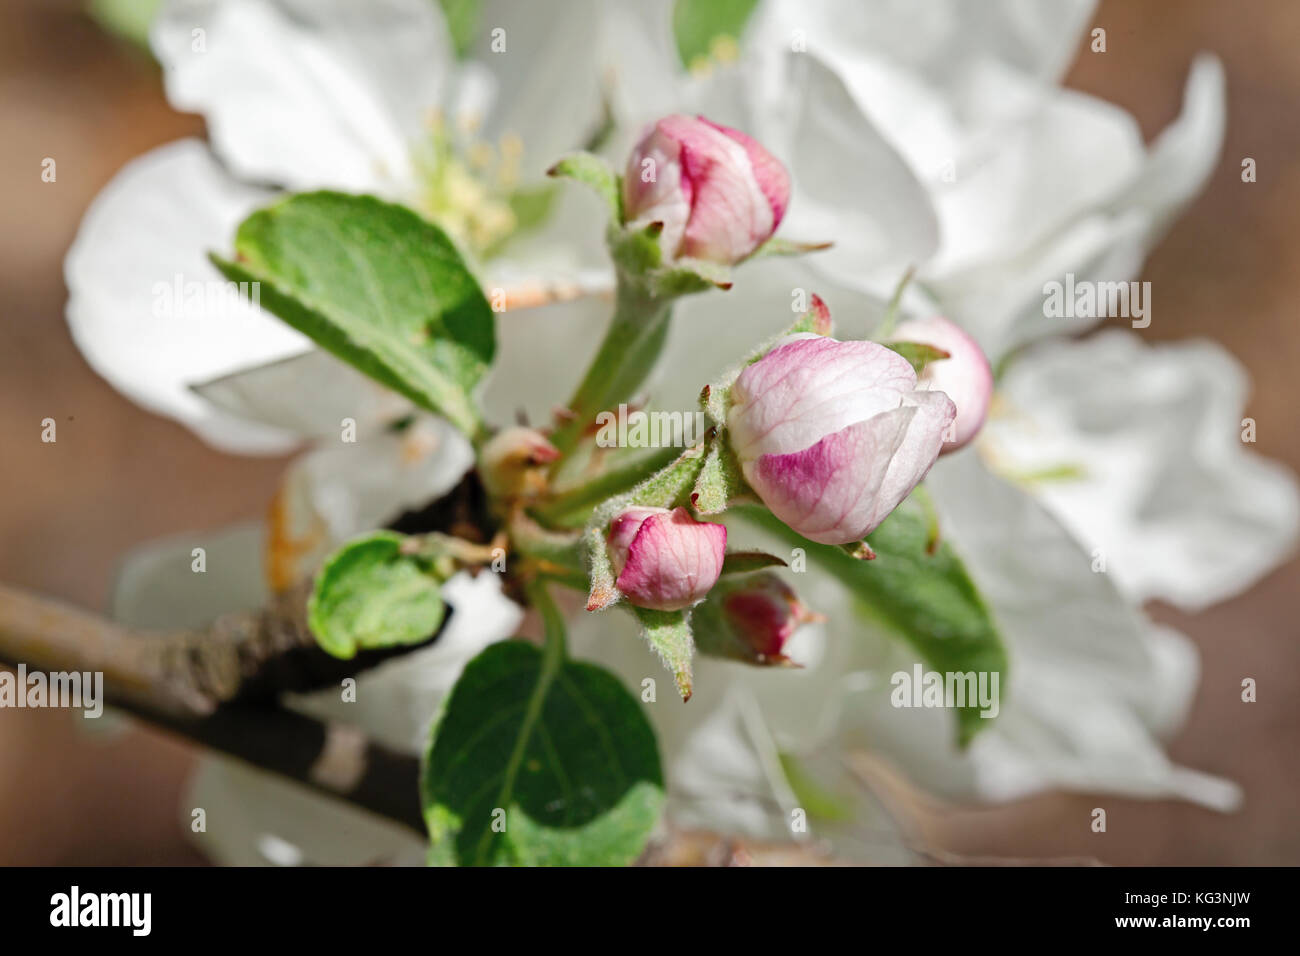 Bianco-rosa fiore di un Apple-tree close up. piccole profondità di nitidezza, indistinto. Foto Stock